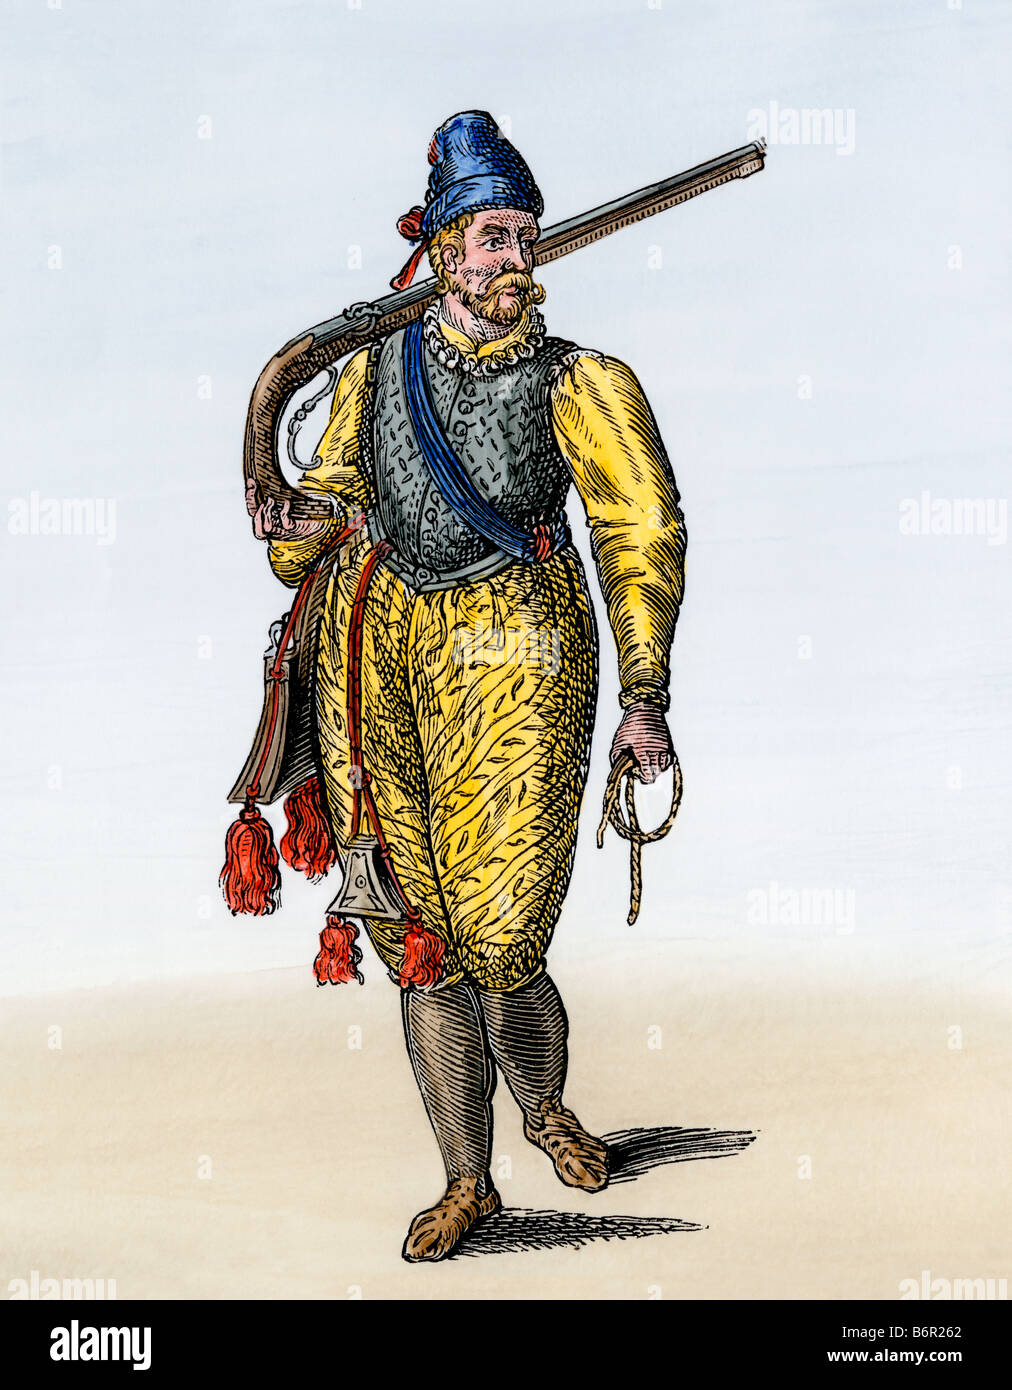 Portant un soldat néerlandais 1500arquebuse s ou 1600s. À la main, gravure sur bois Banque D'Images